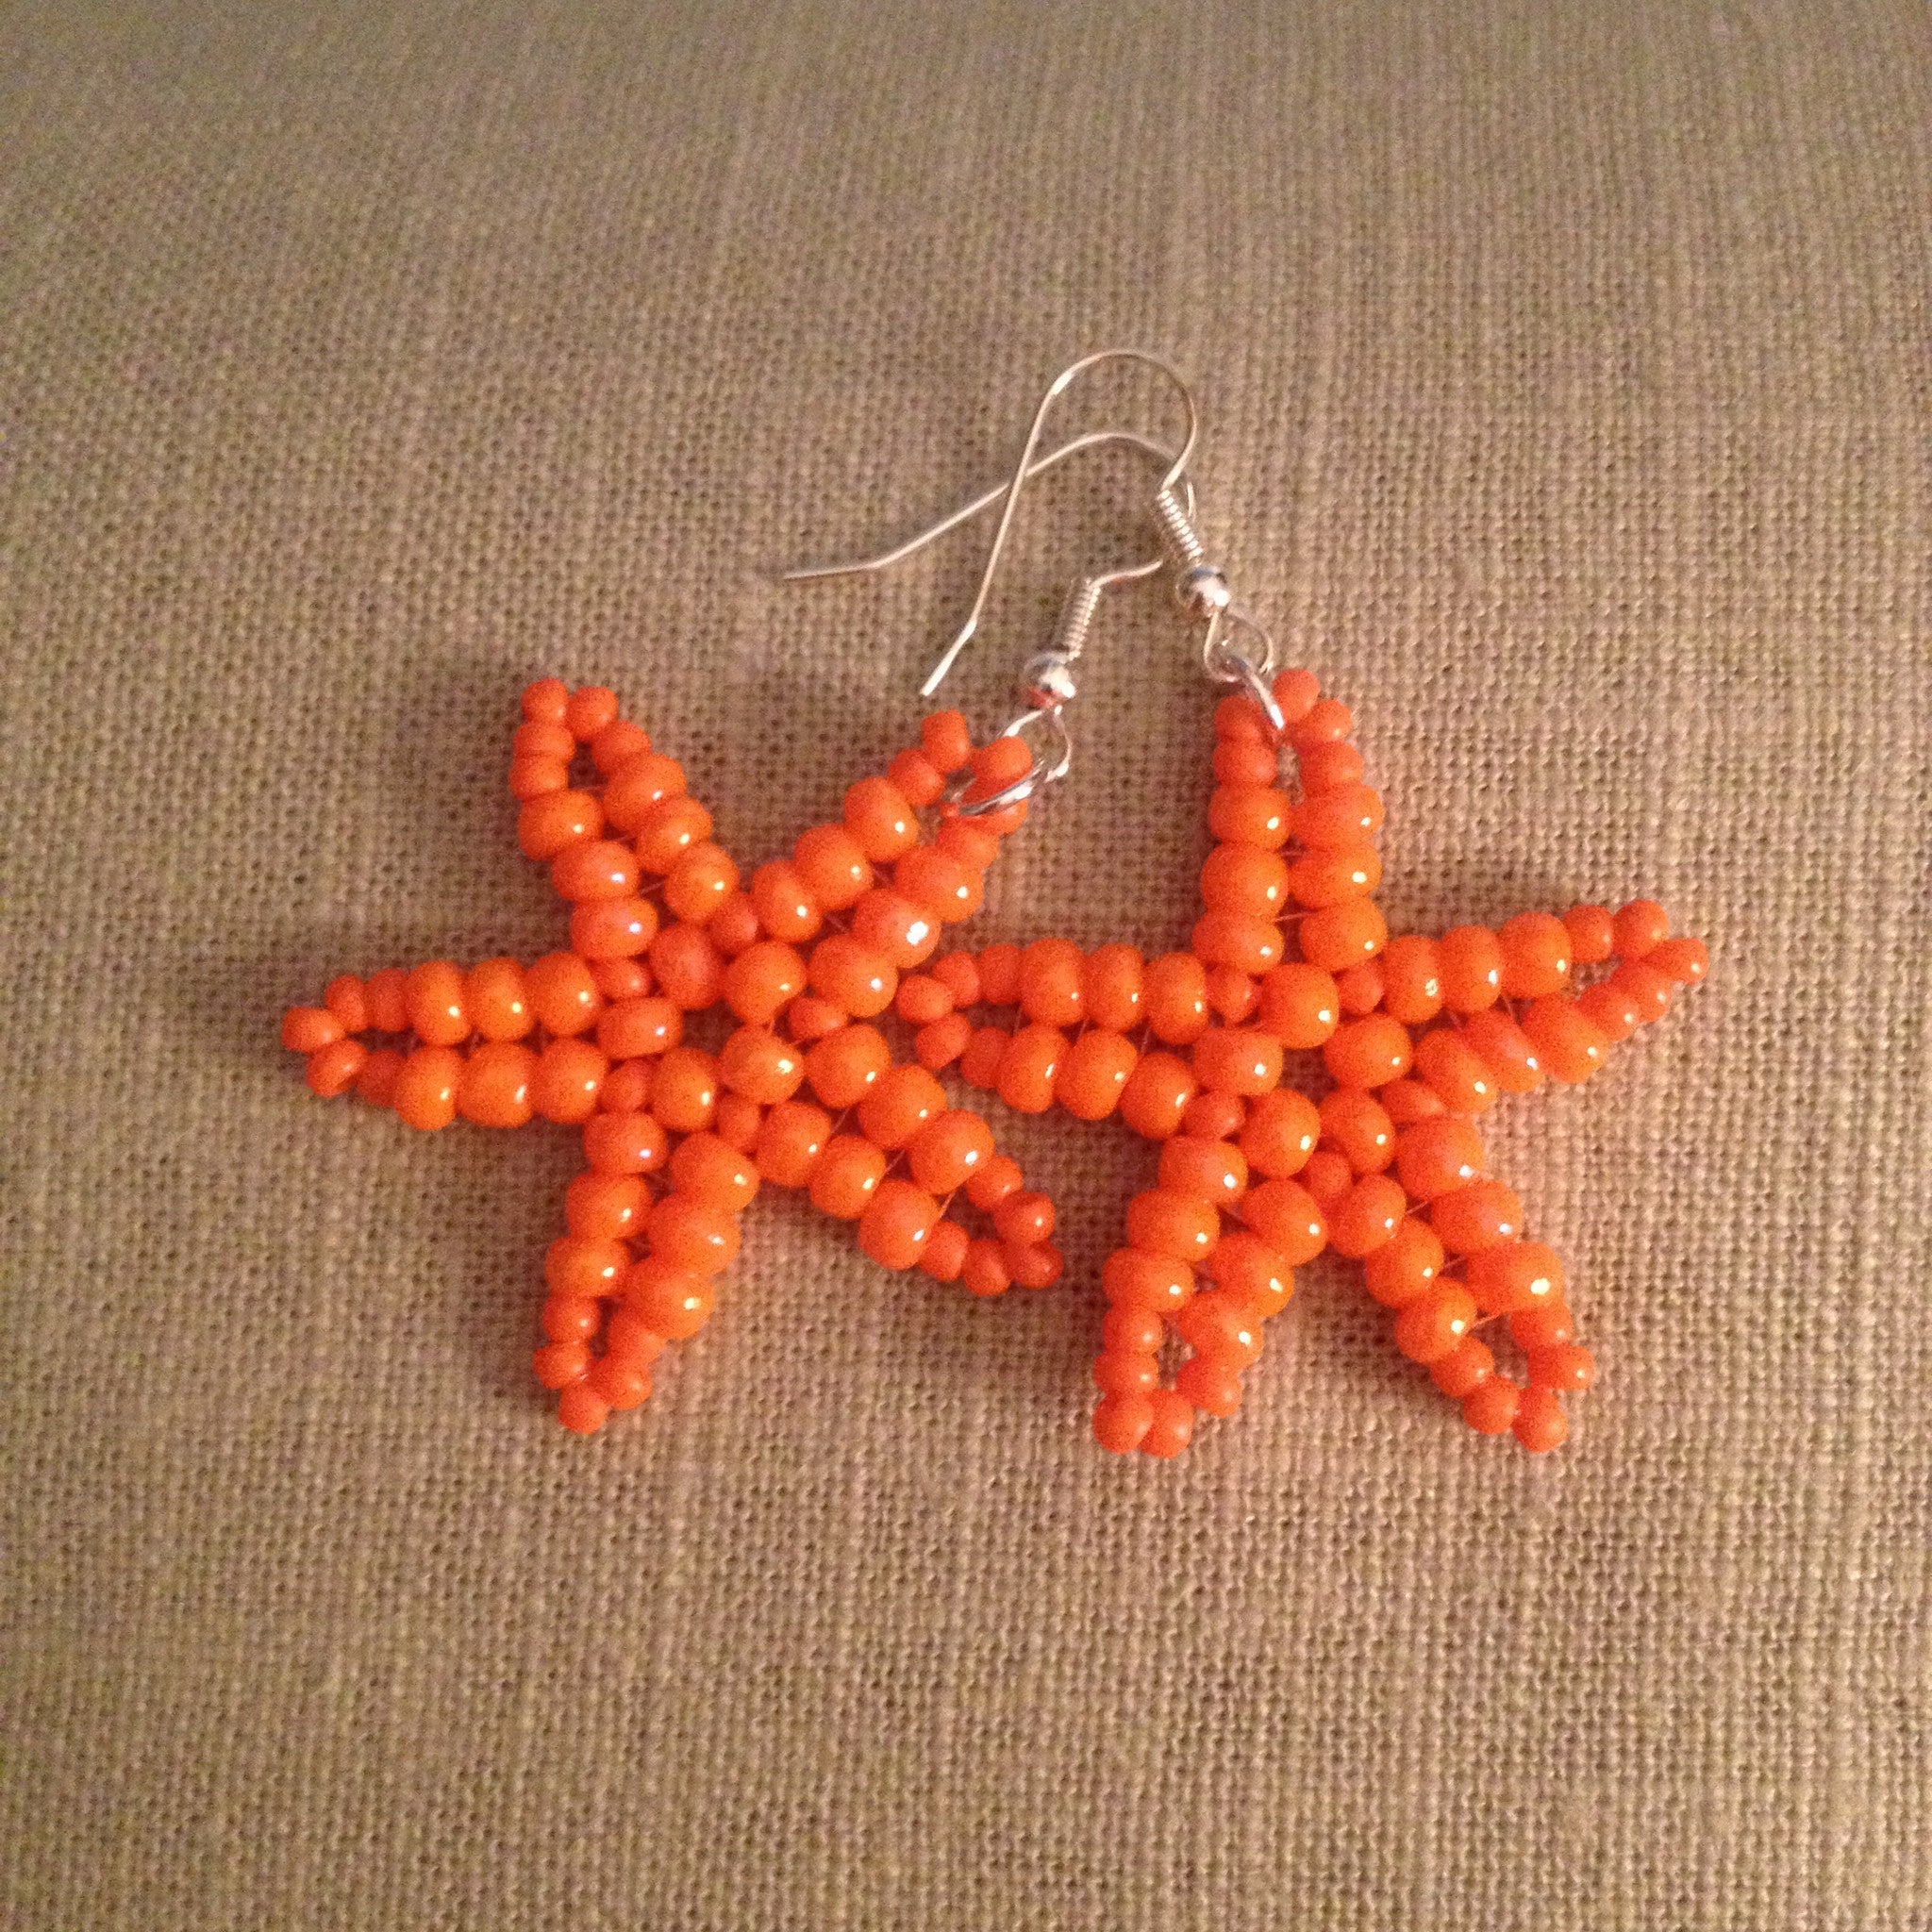 Starfish Tangerine Orange beaded earrings hand made beachy